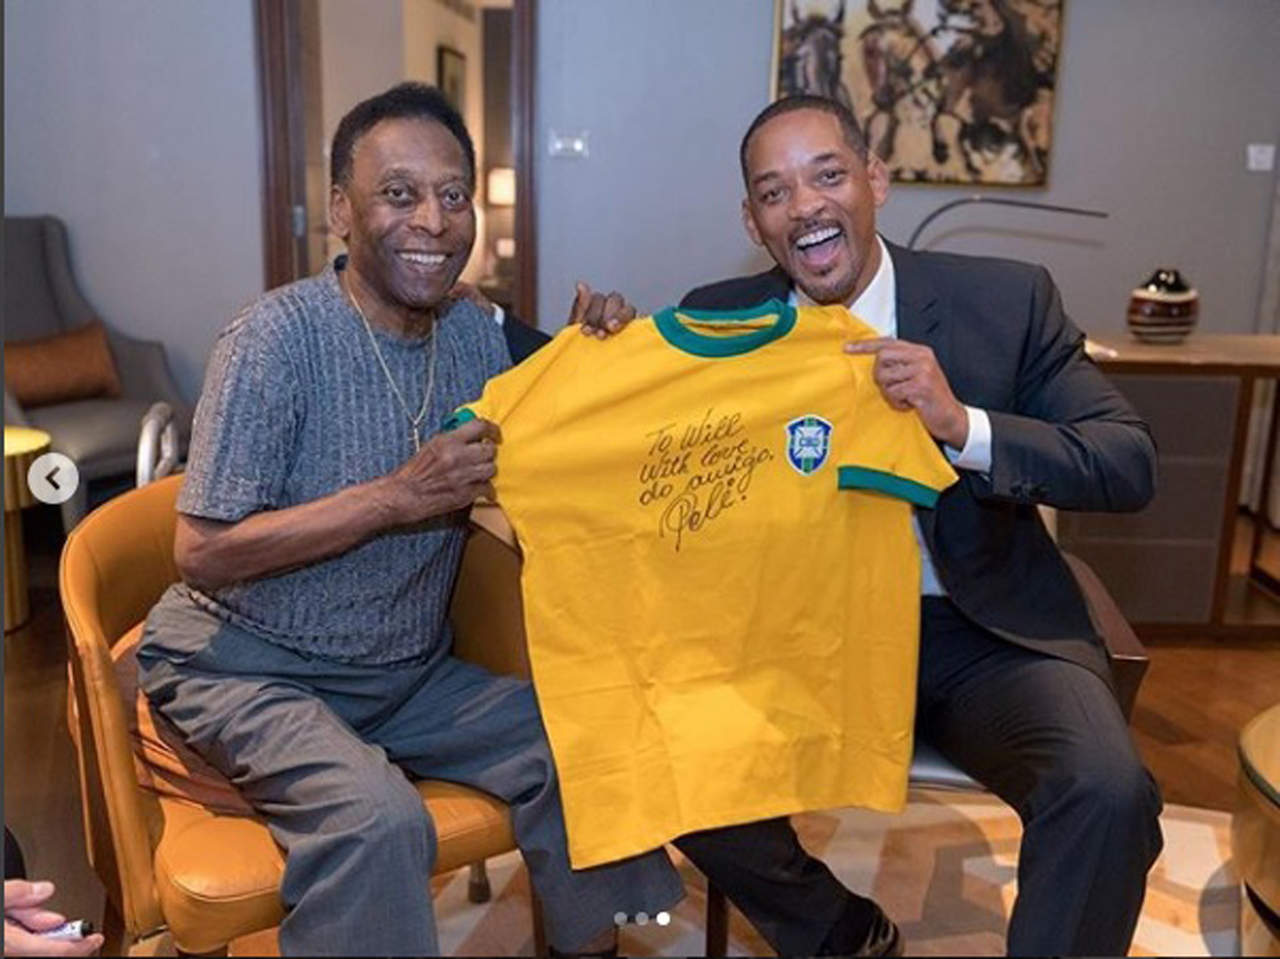 En una breve visita a Brasil para una cena gala, el actor se encontró con el exfutbolista, quien le regaló una playera de la selección brasileña. (ESPECIAL)